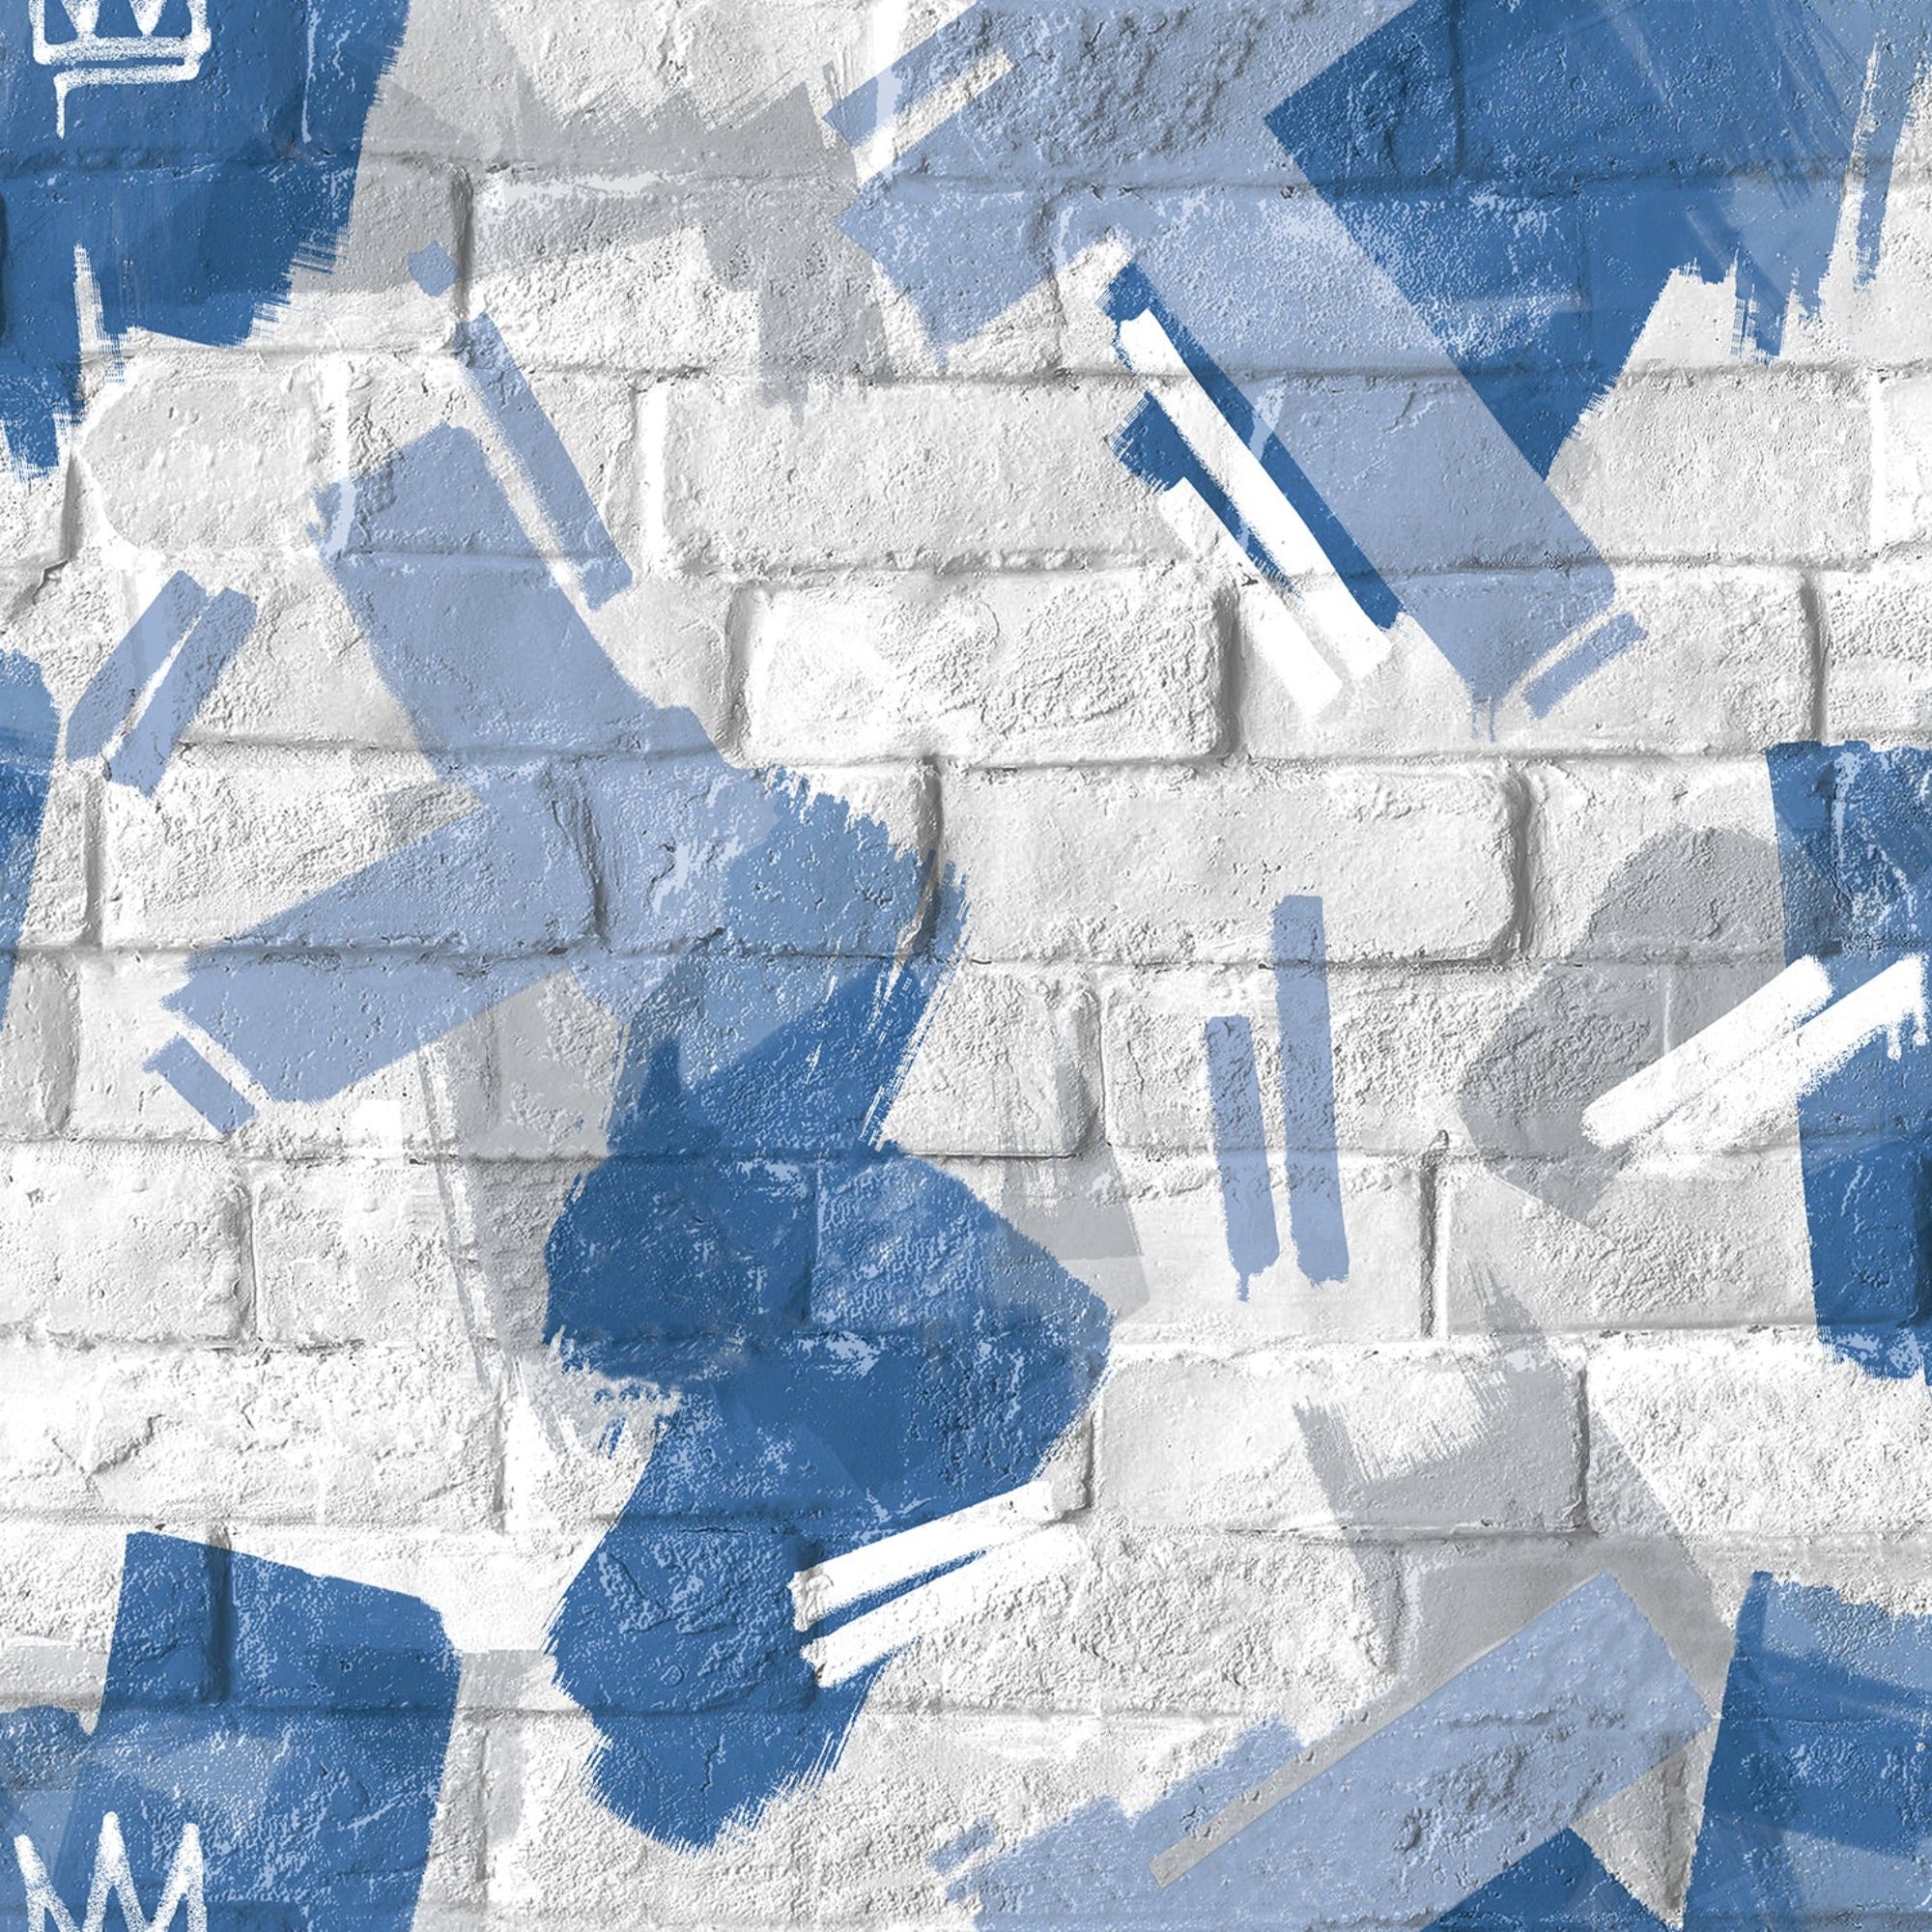 Graffiti Brush White Blue Wallpaper | WonderWall by Nobletts | #Variant SKU# | Ugepa